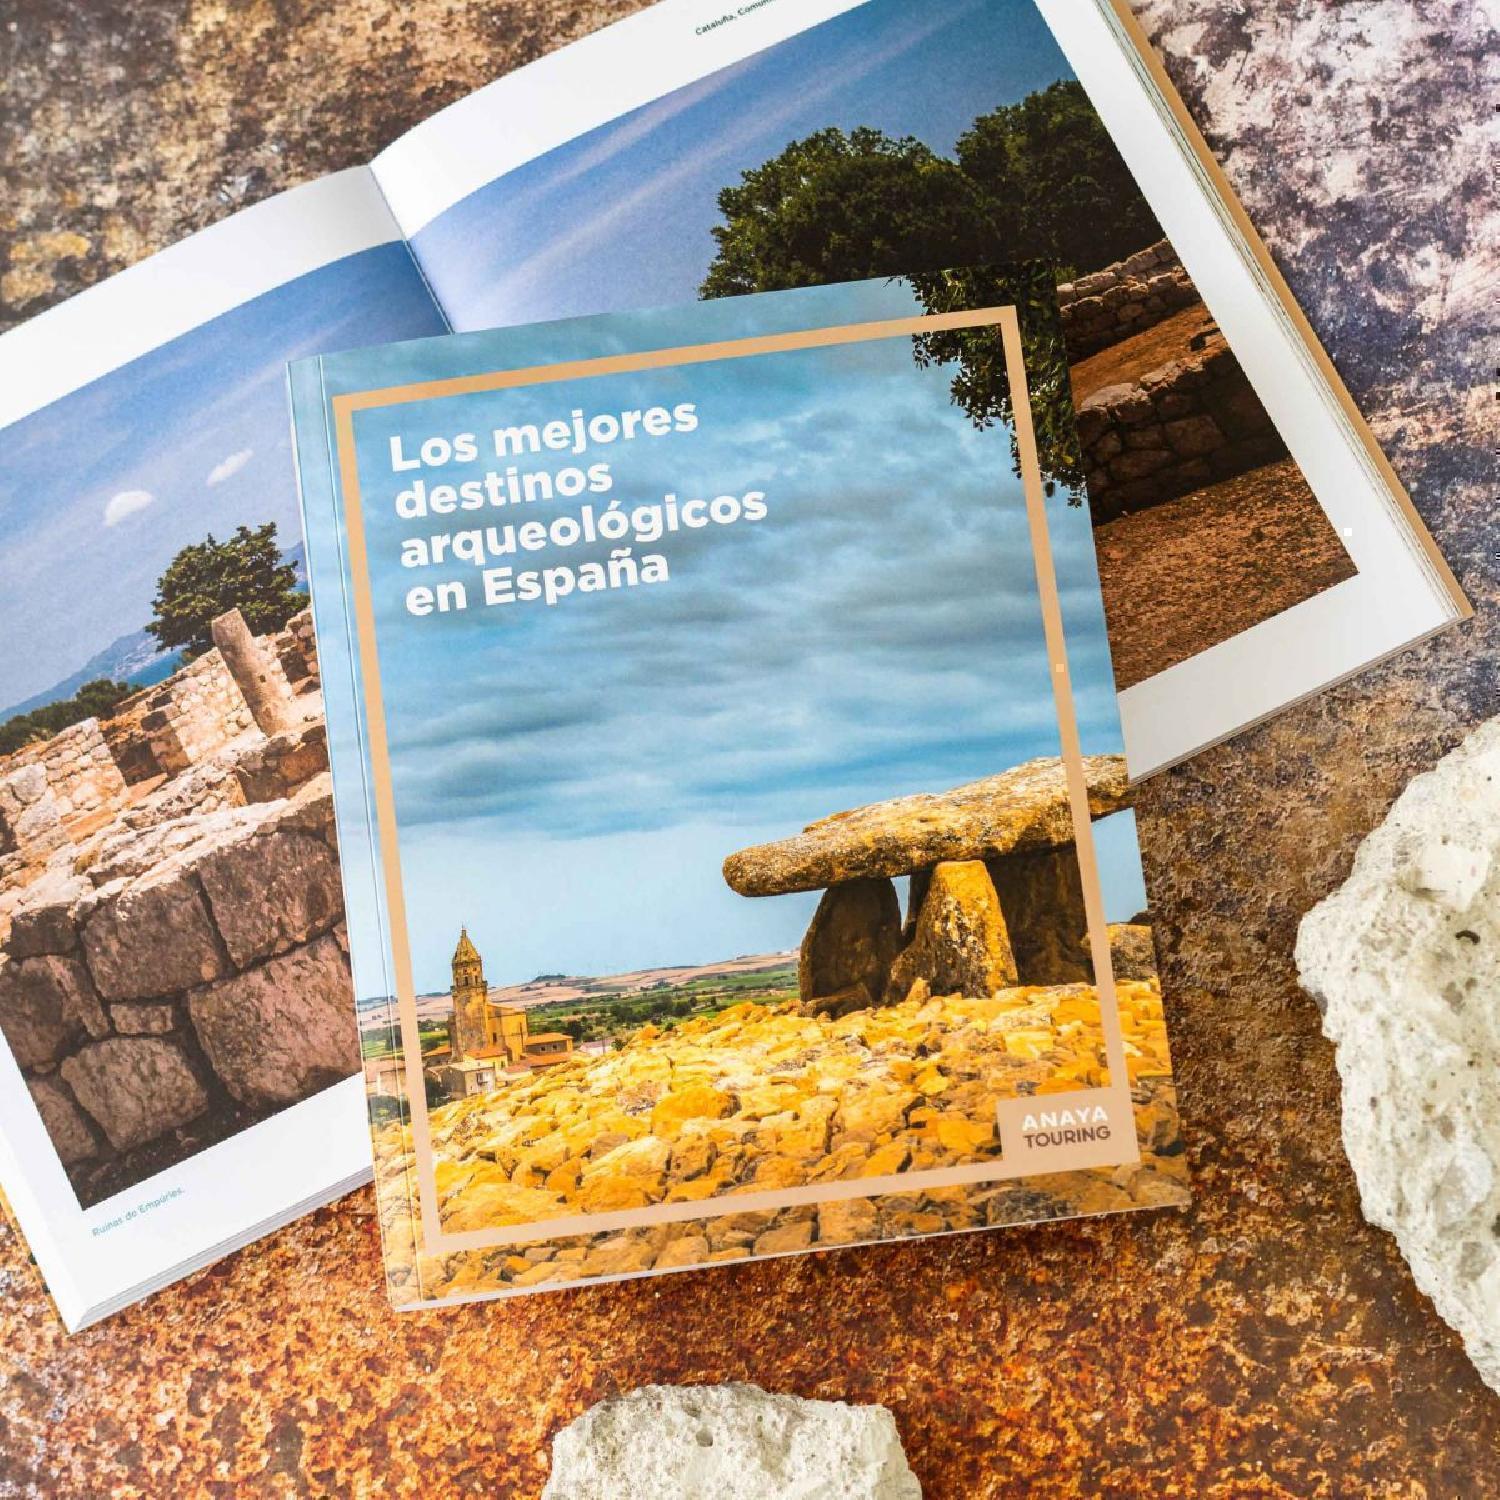 Los mejores destinos arqueológicos en España de la editorial Anaya Touring